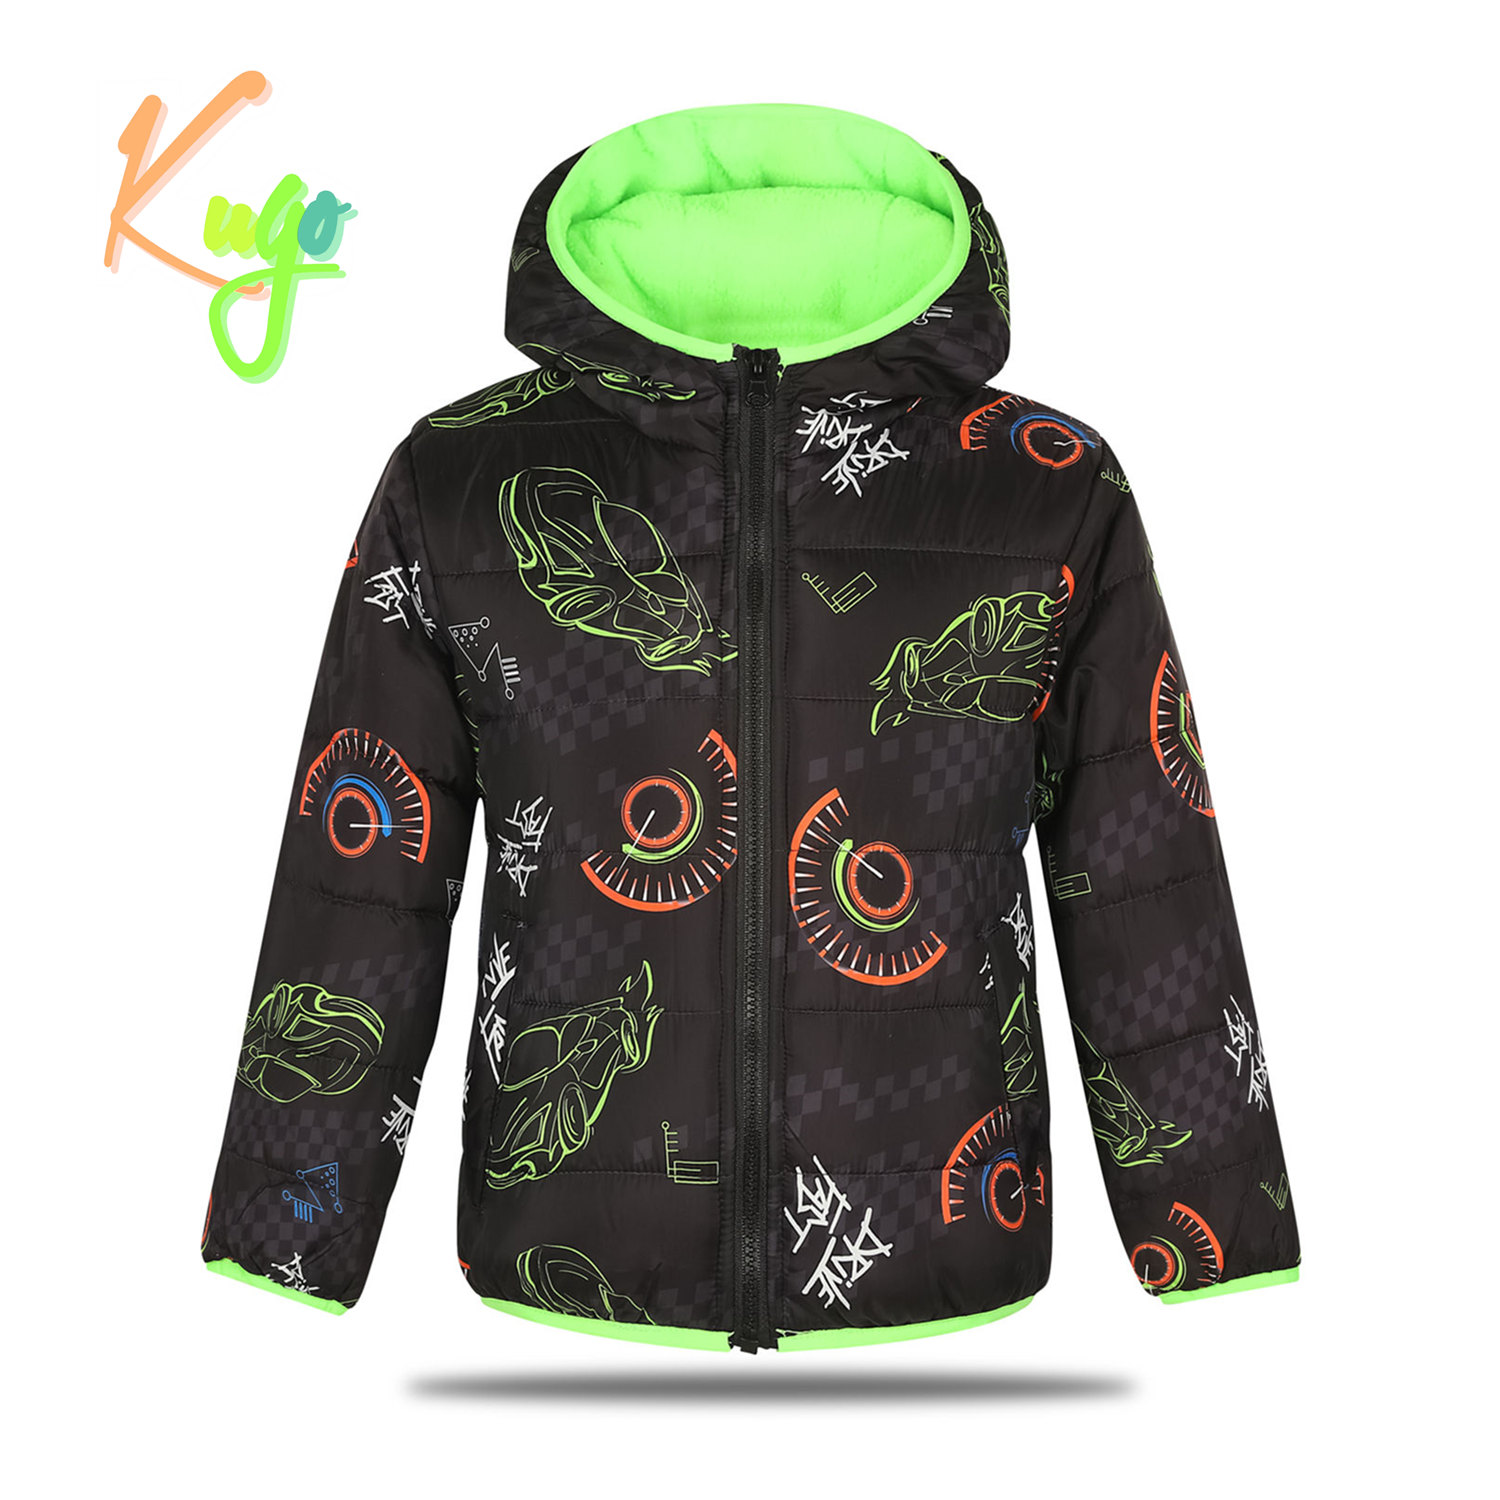 Chlapecká zimní bunda - KUGO FB0296, černá Barva: Černá, Velikost: 98